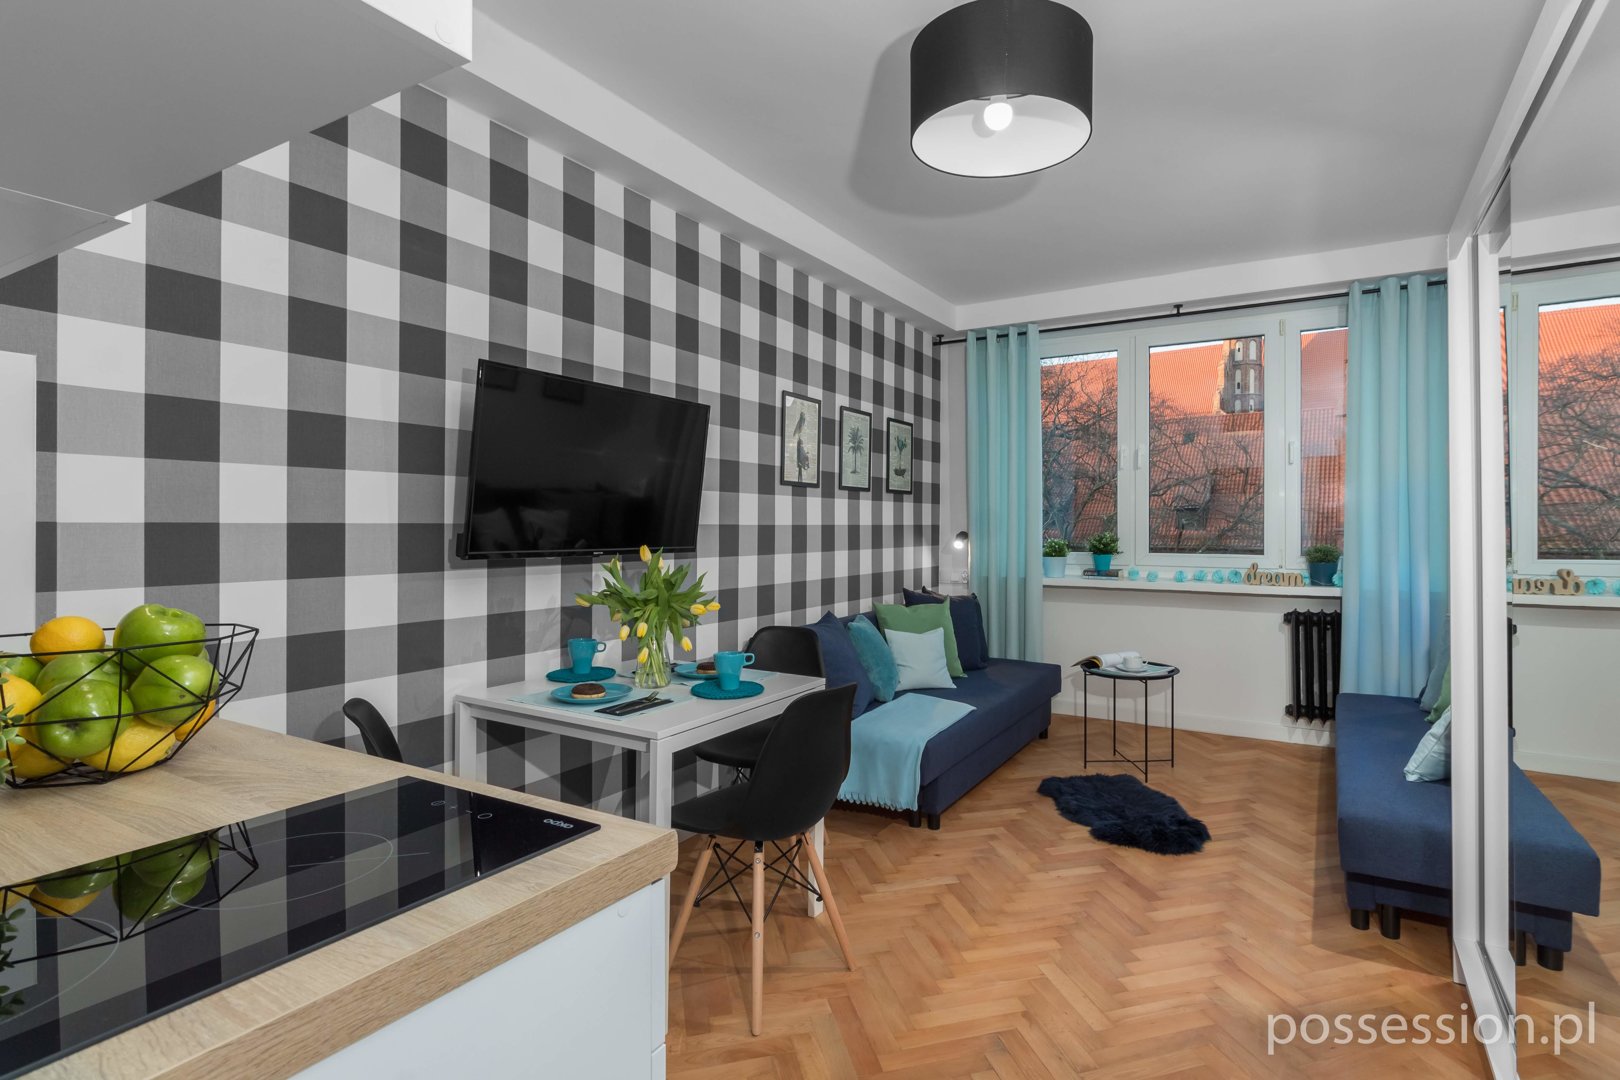 Apartments & rooms Possession Mikro apartament #2 czteroosobowy. Toruńska 2a/14 śródmieście w centrum Gdańska stare miasto z widok